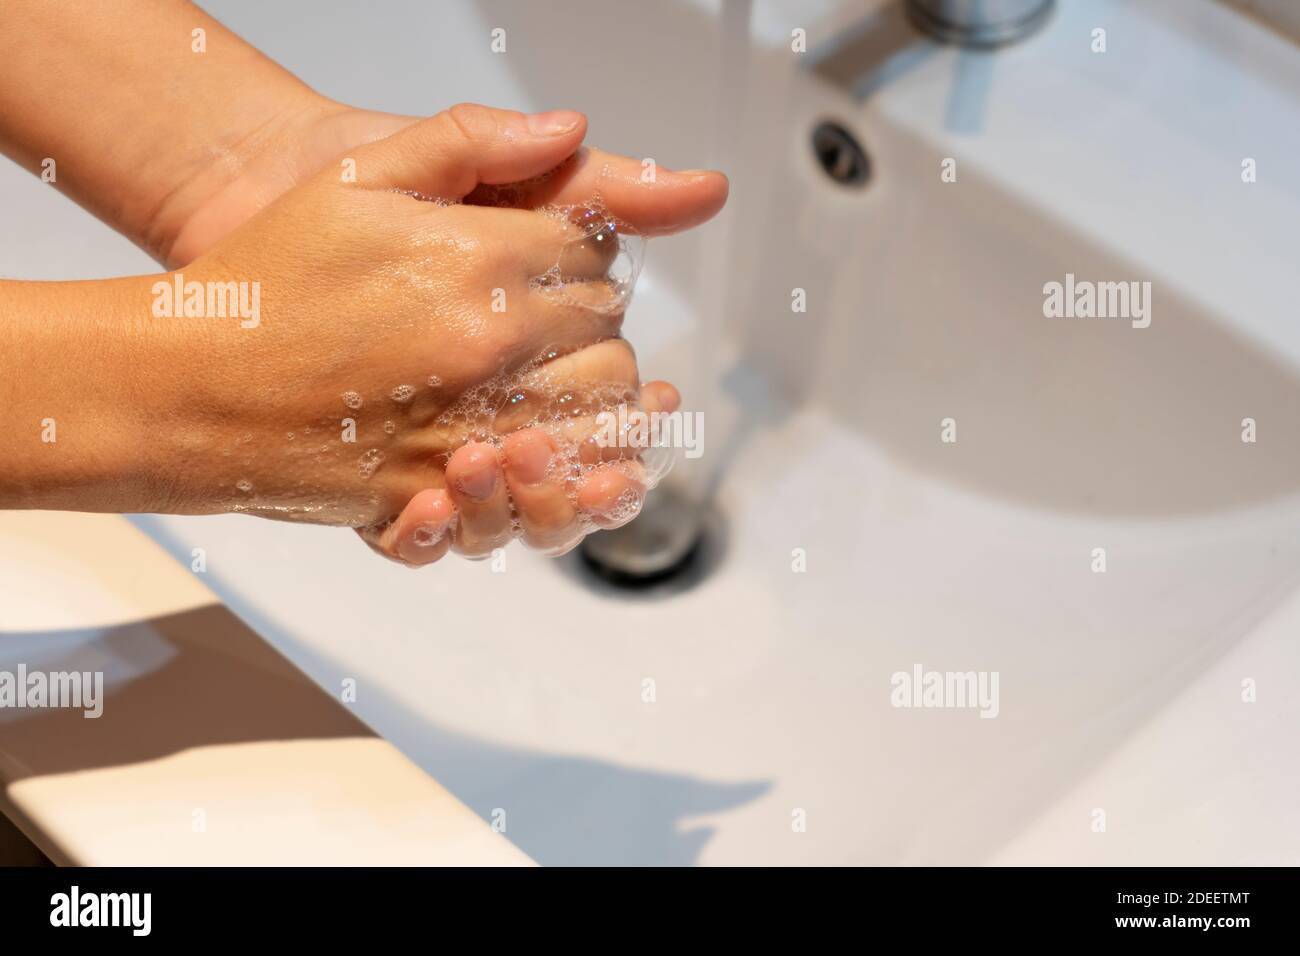 Donna lavando le mani con sapone in concetto sink.Hygiene, protezione preventiva contro germi, coronavirus o covid-19. Foto Stock